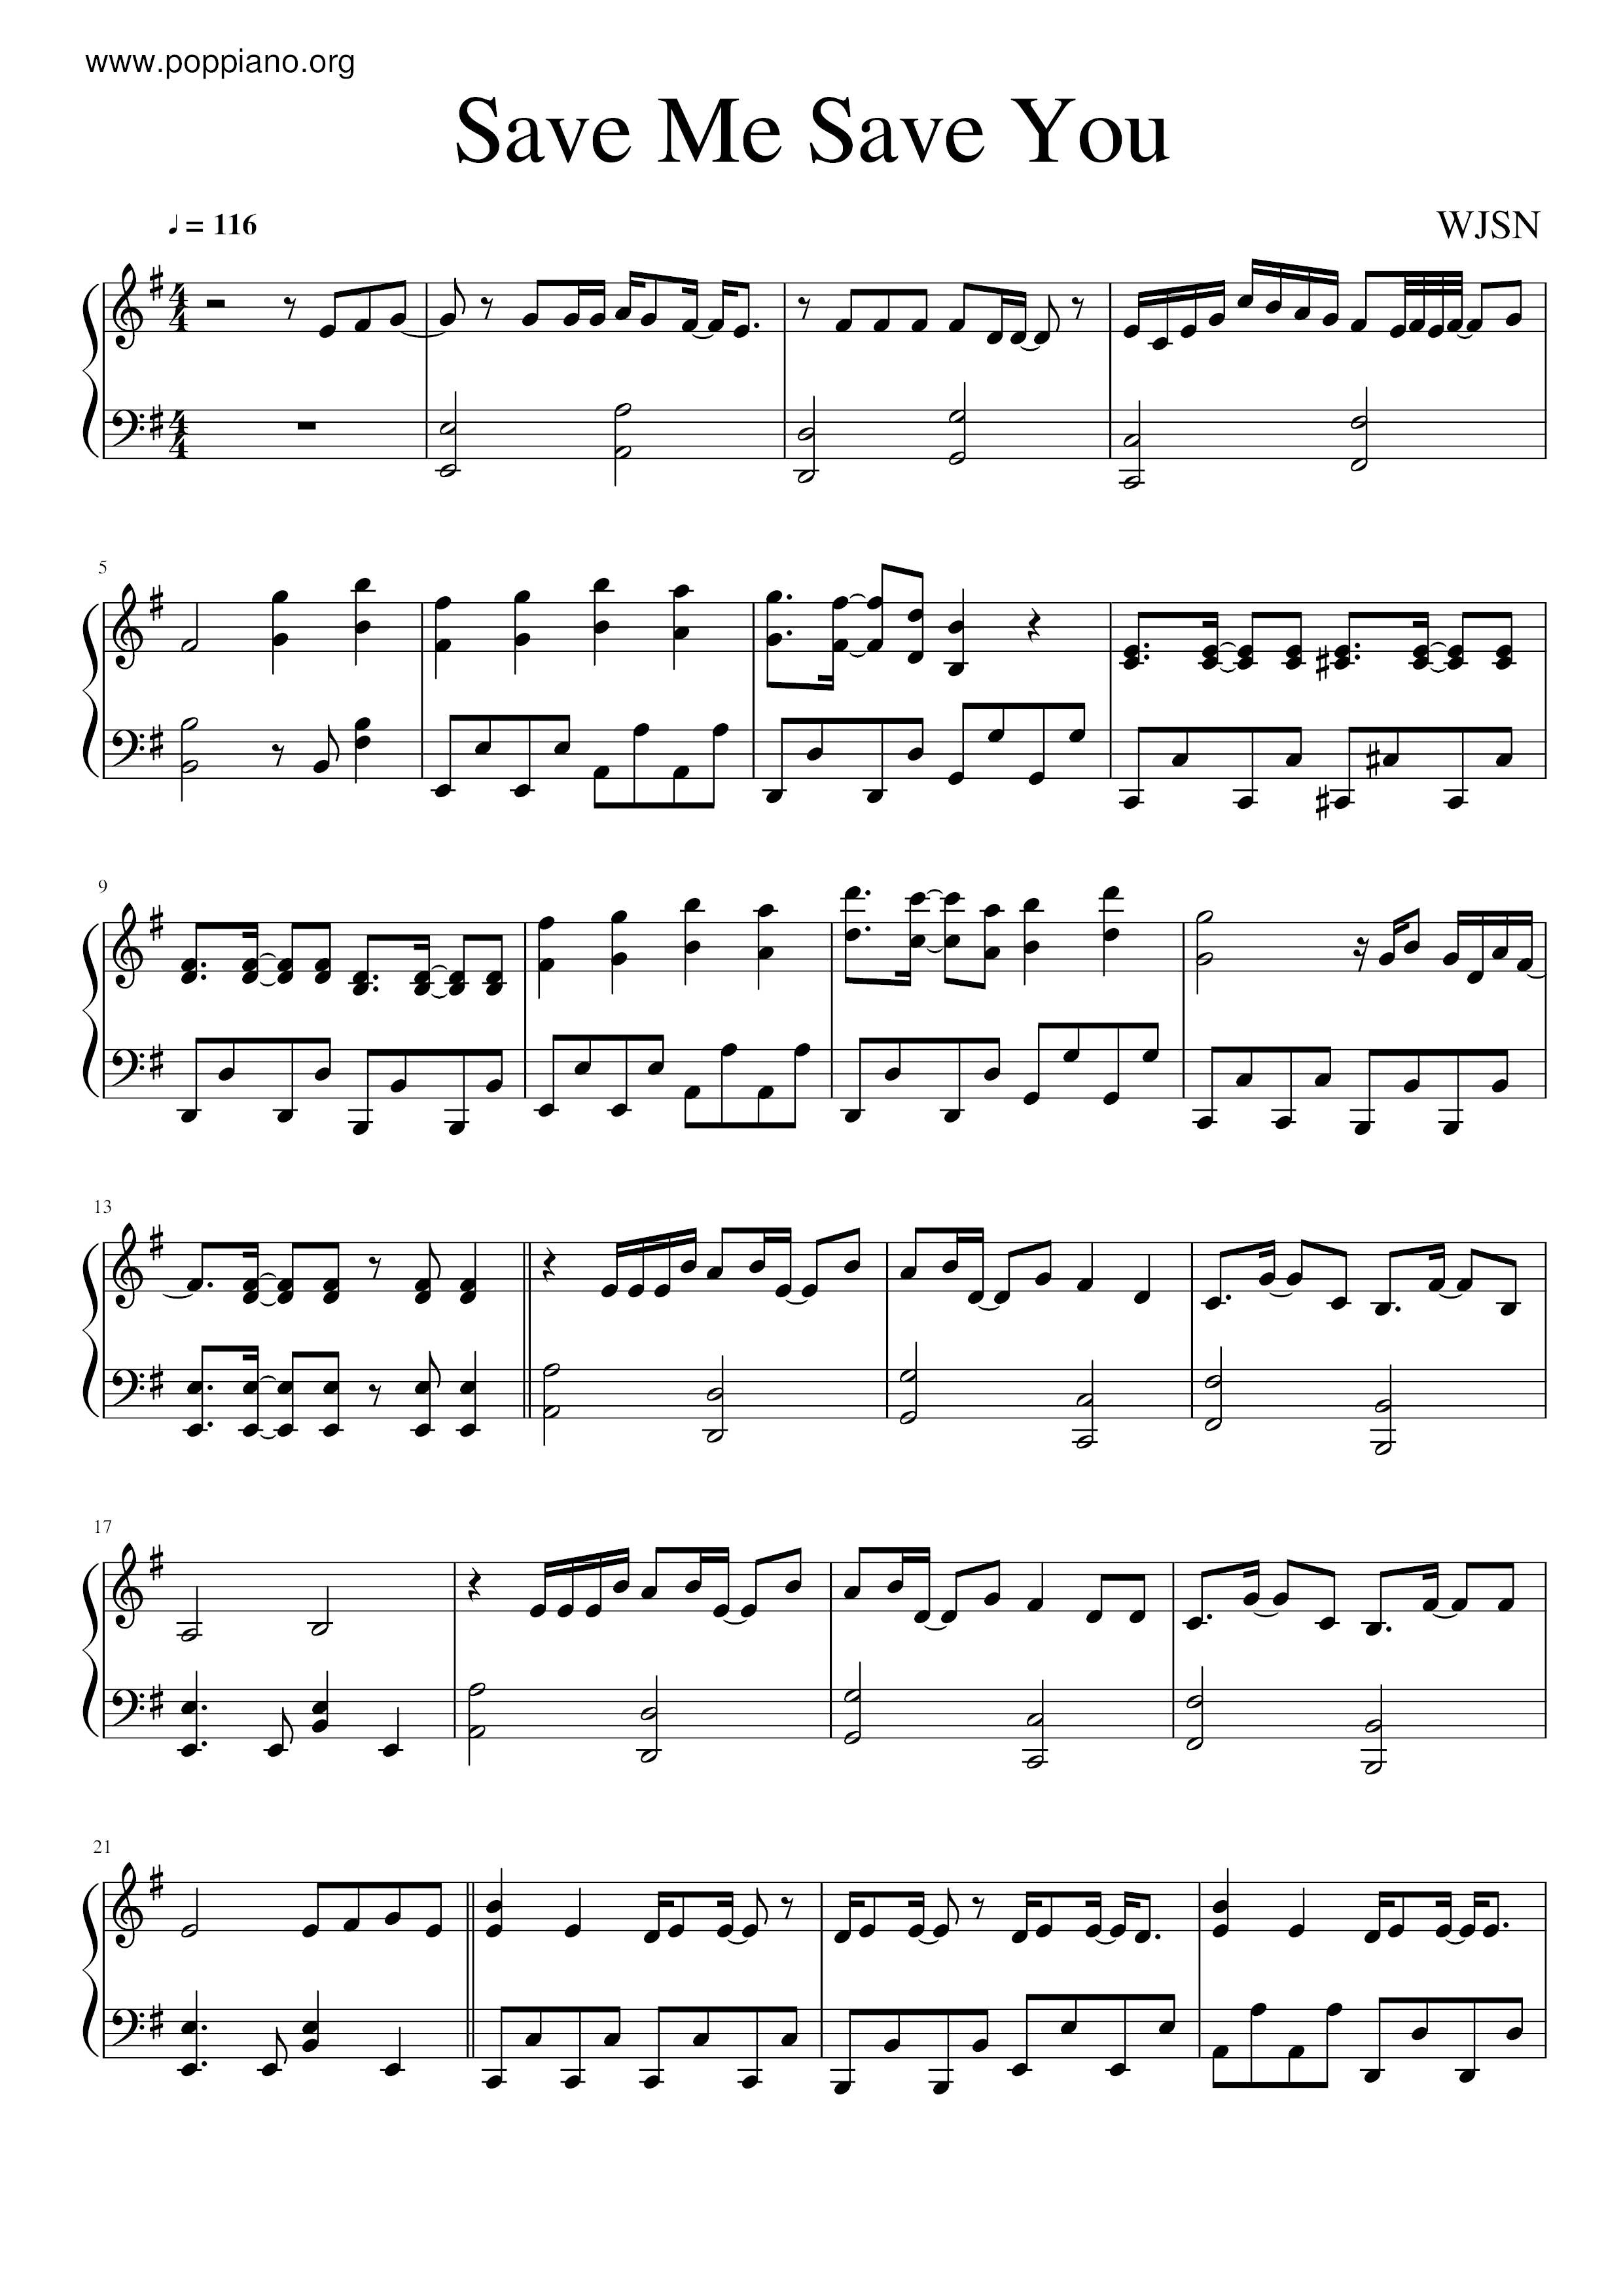 wjsn-save-me-save-you-sheet-music-pdf-free-score-download